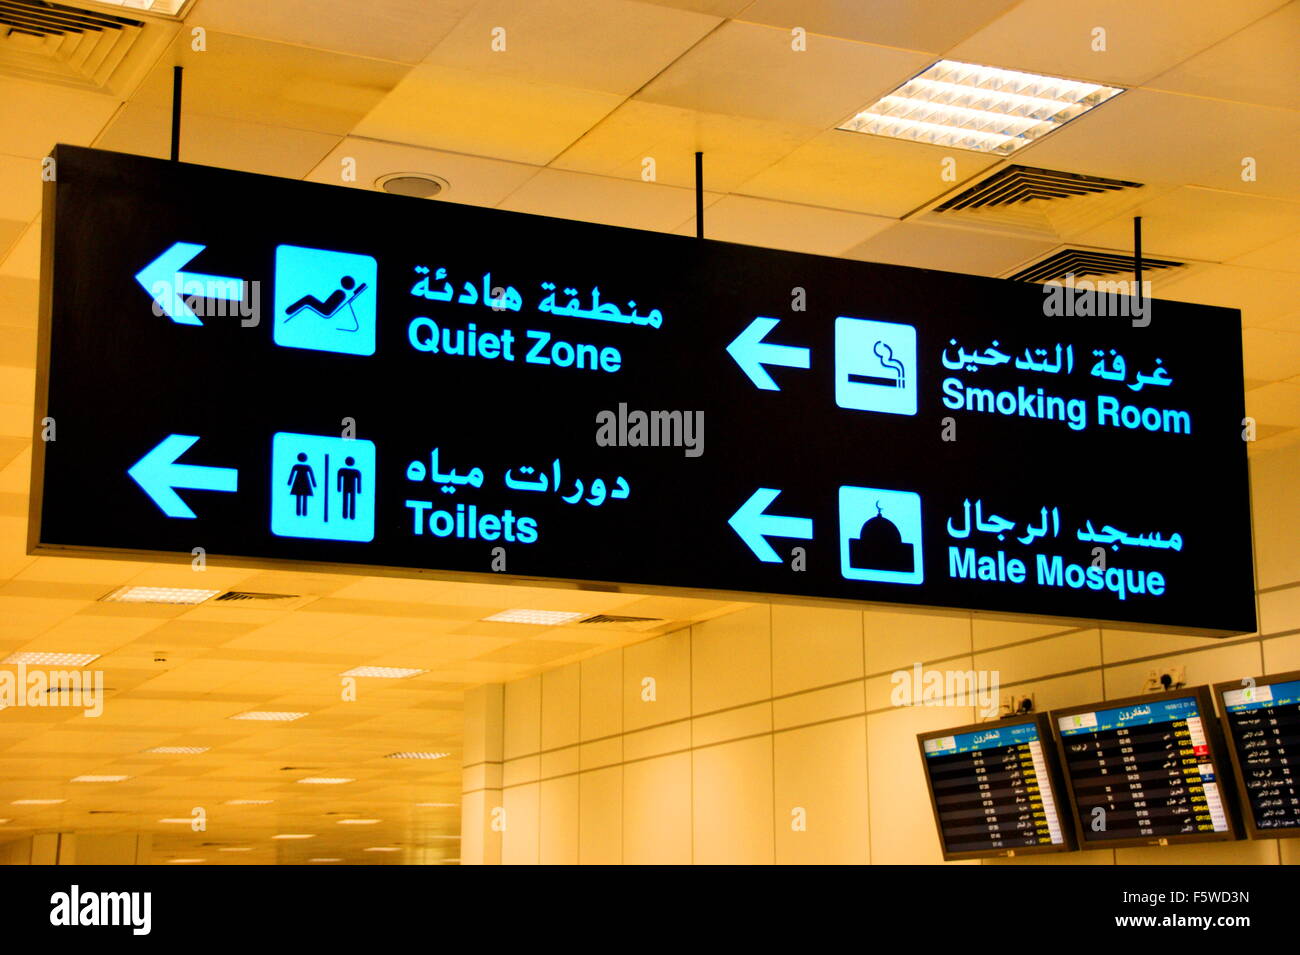 Arabisch-Englisch Flughafen Zeichen Stockfoto